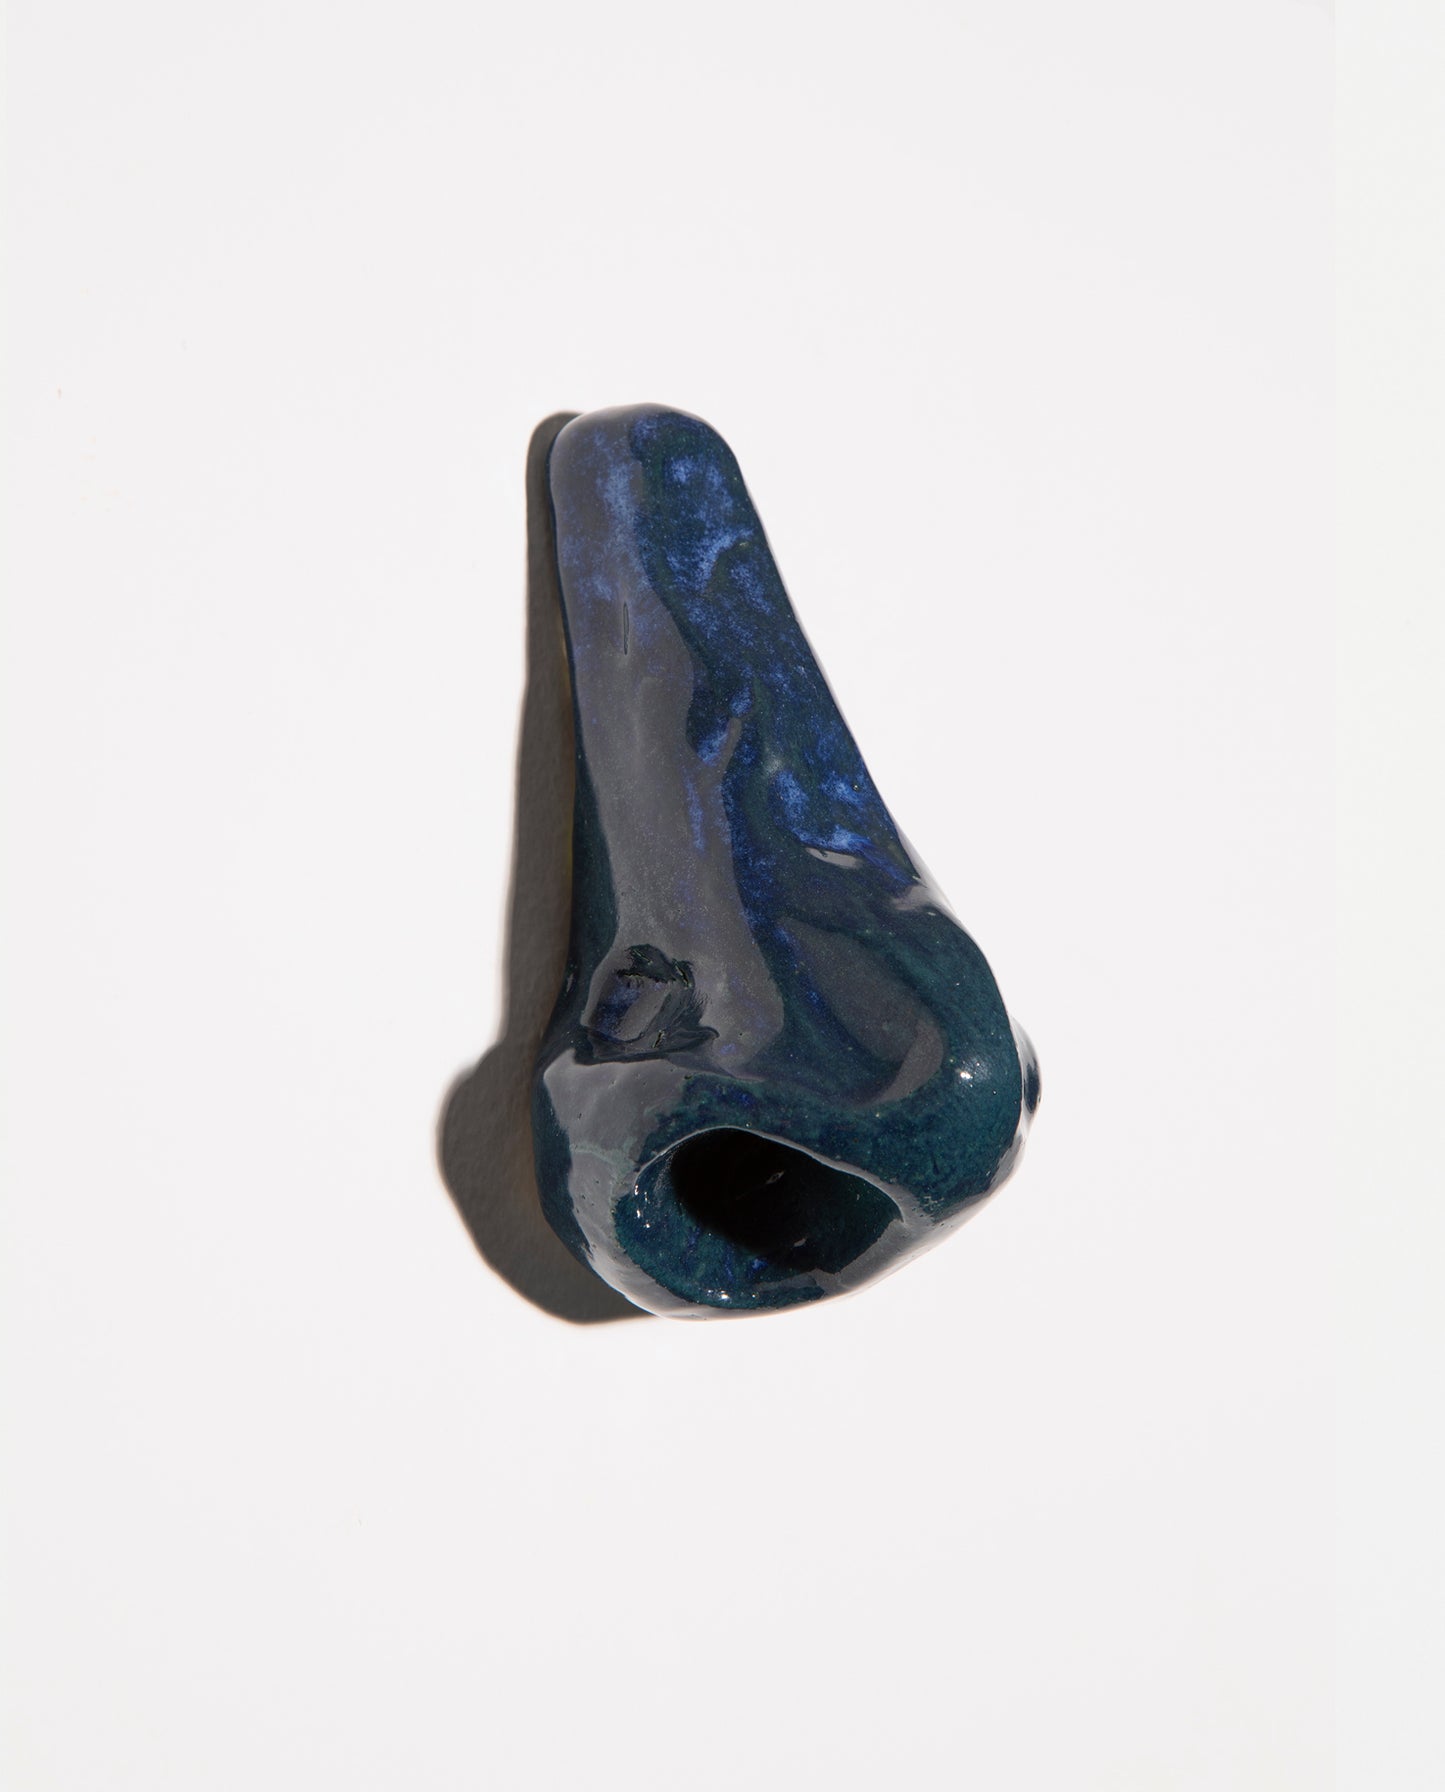 Petite sculpture. Nez en céramique grès émaillé bleu avec de légère nucléations bleues claires